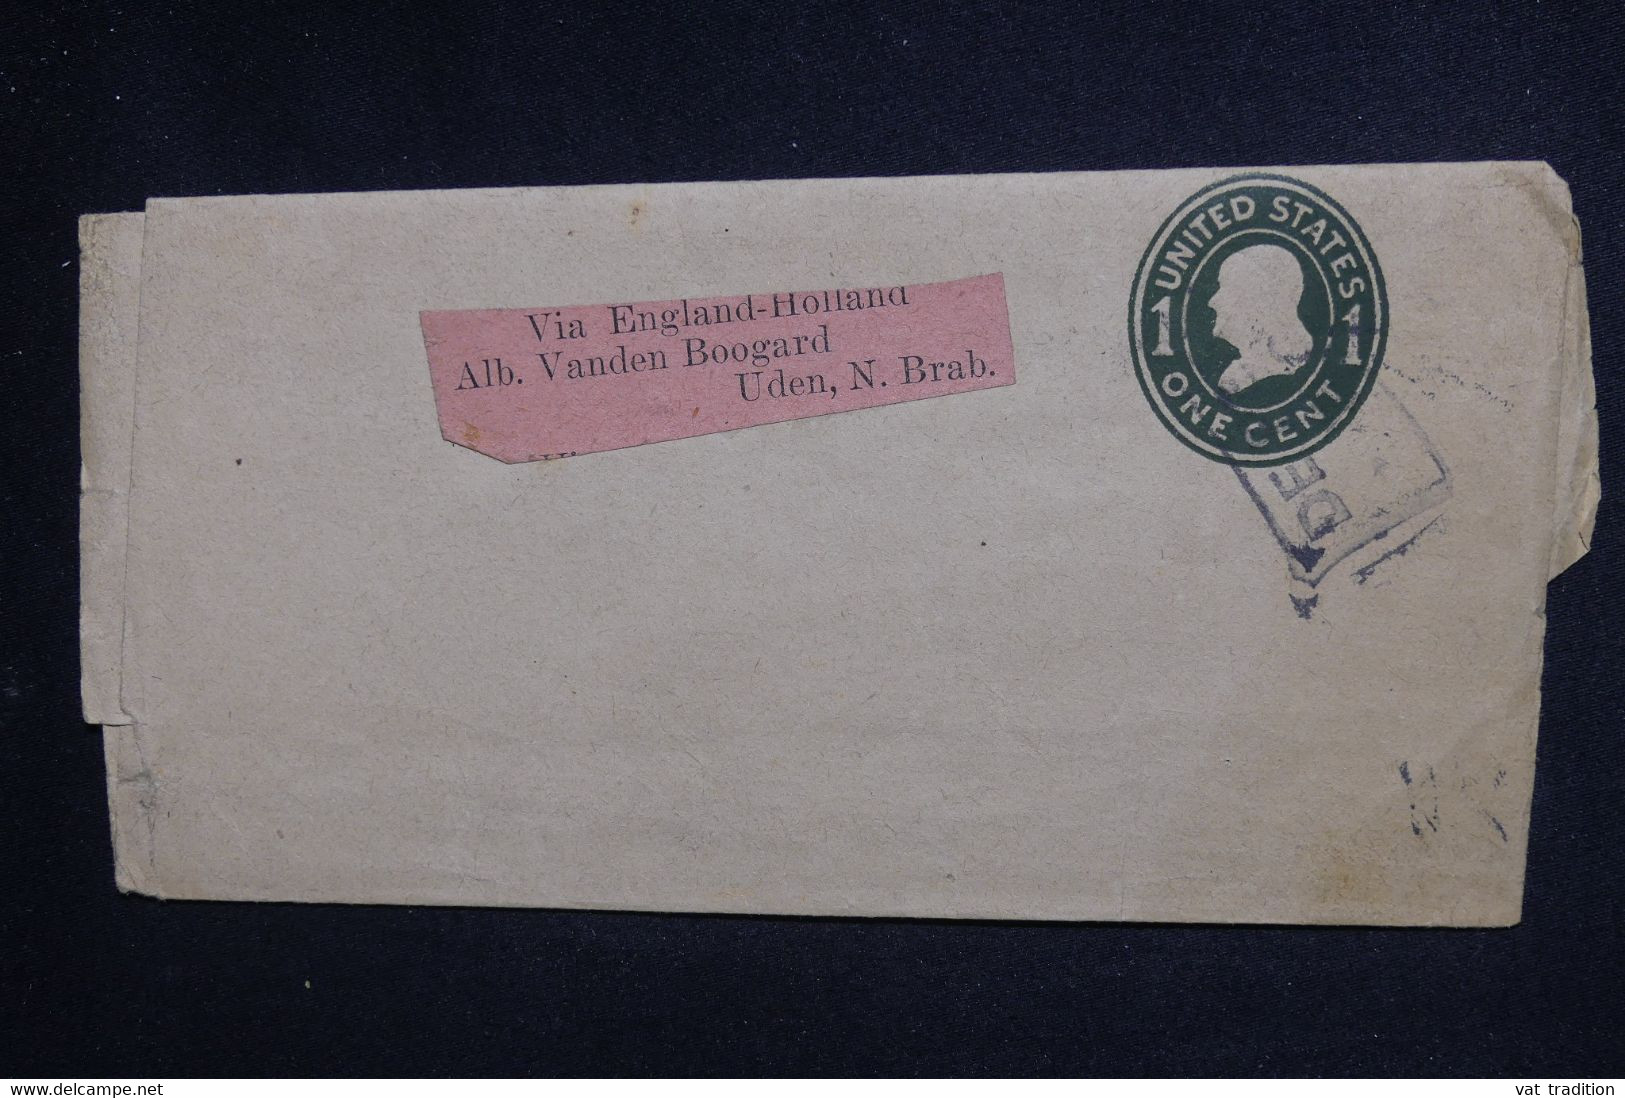 ETATS UNIS - Entier Postal Pour Les Pays Bas En 1910  - L 128651 - 1901-20